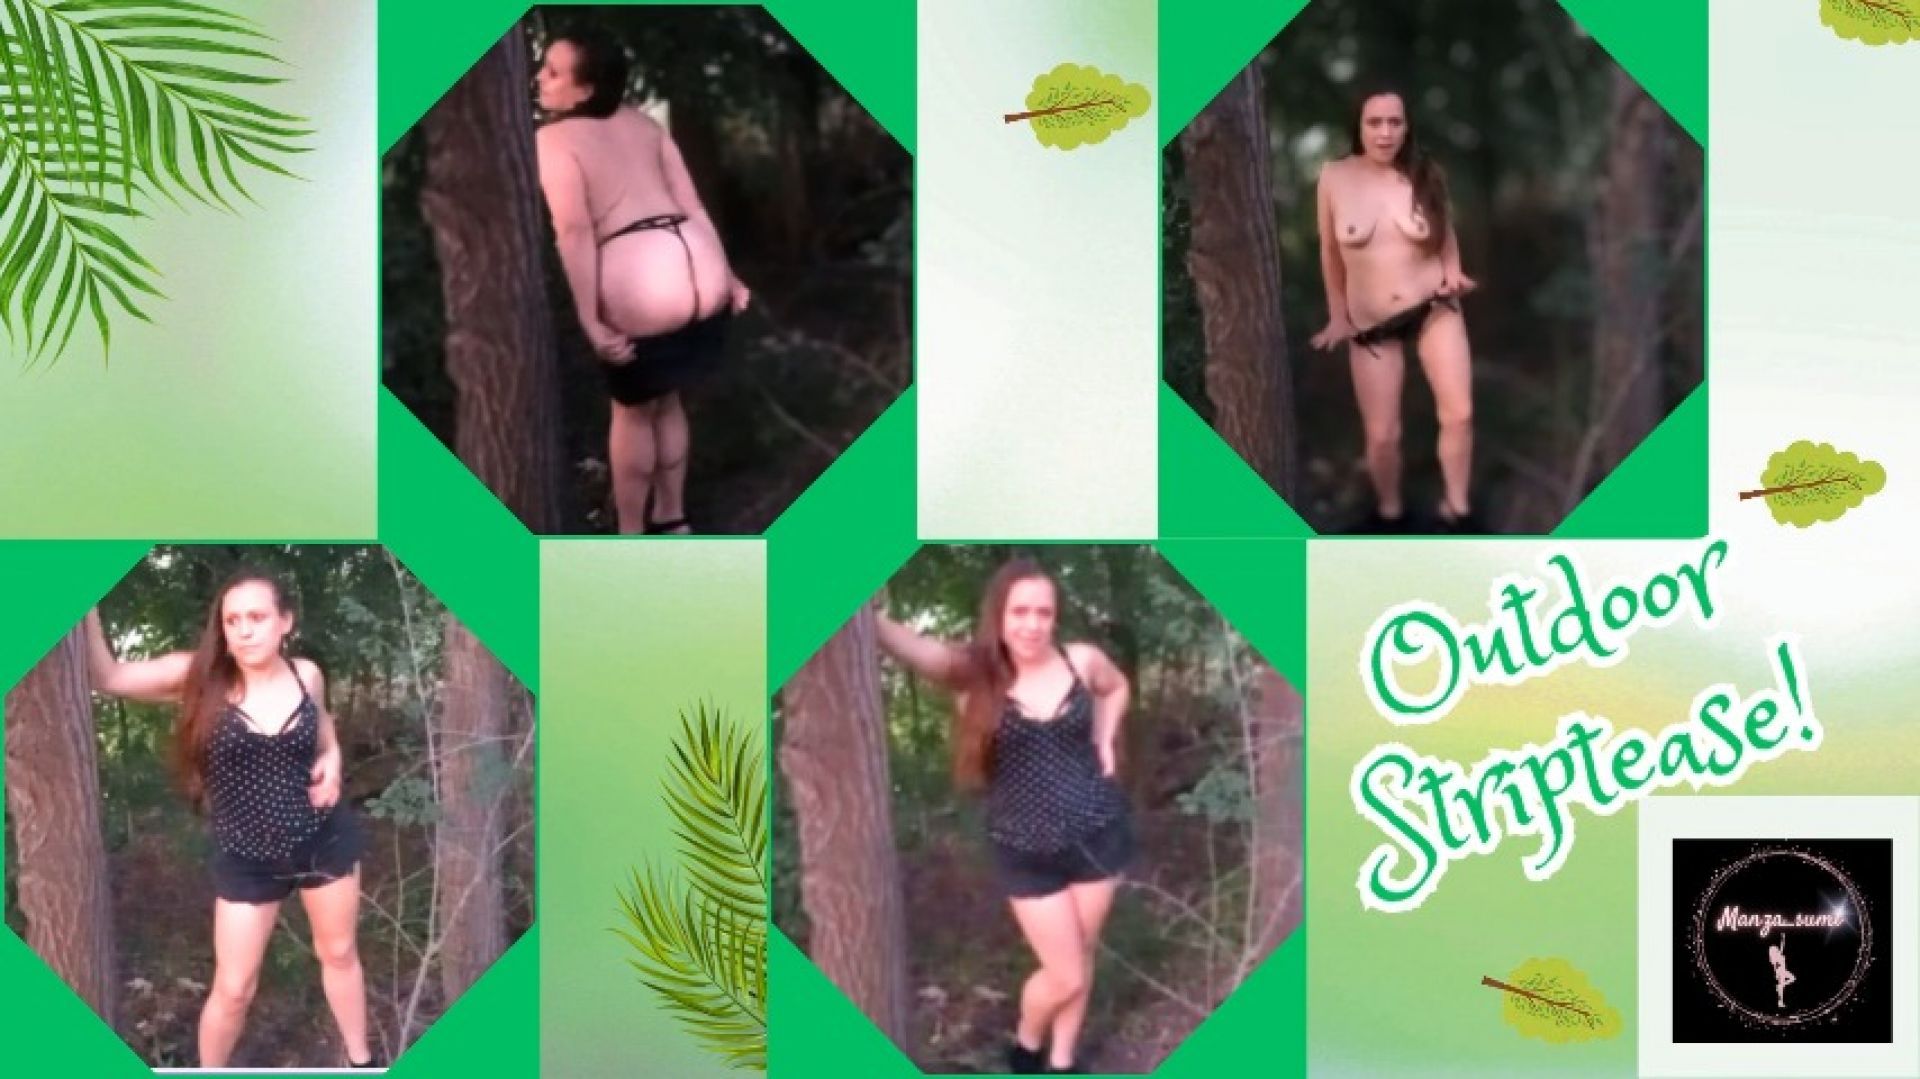 A Cheeky outdoor striptease